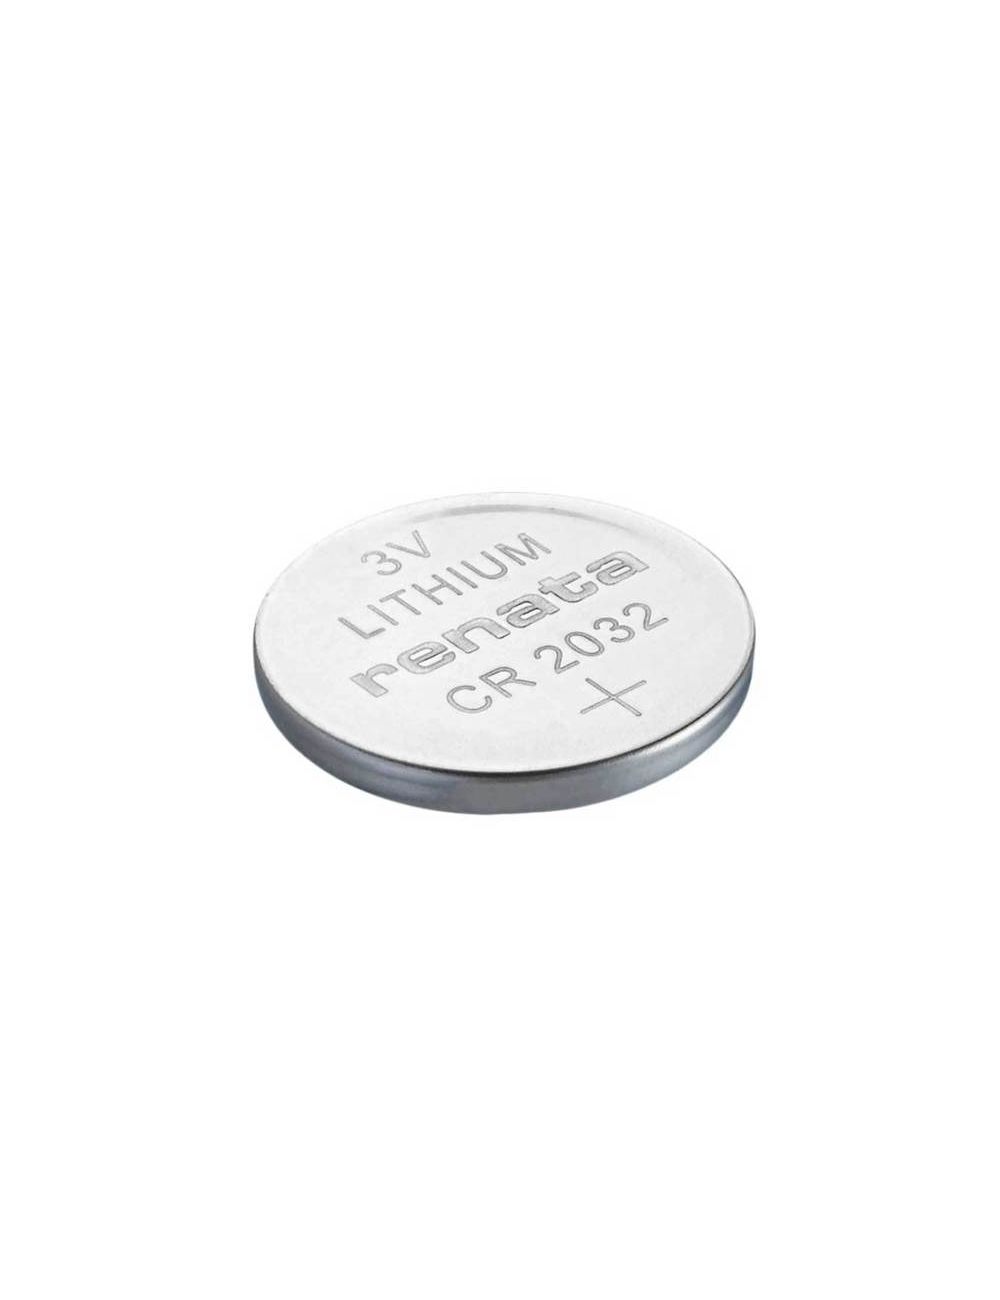 Batería CR2032, pila de botón de litio